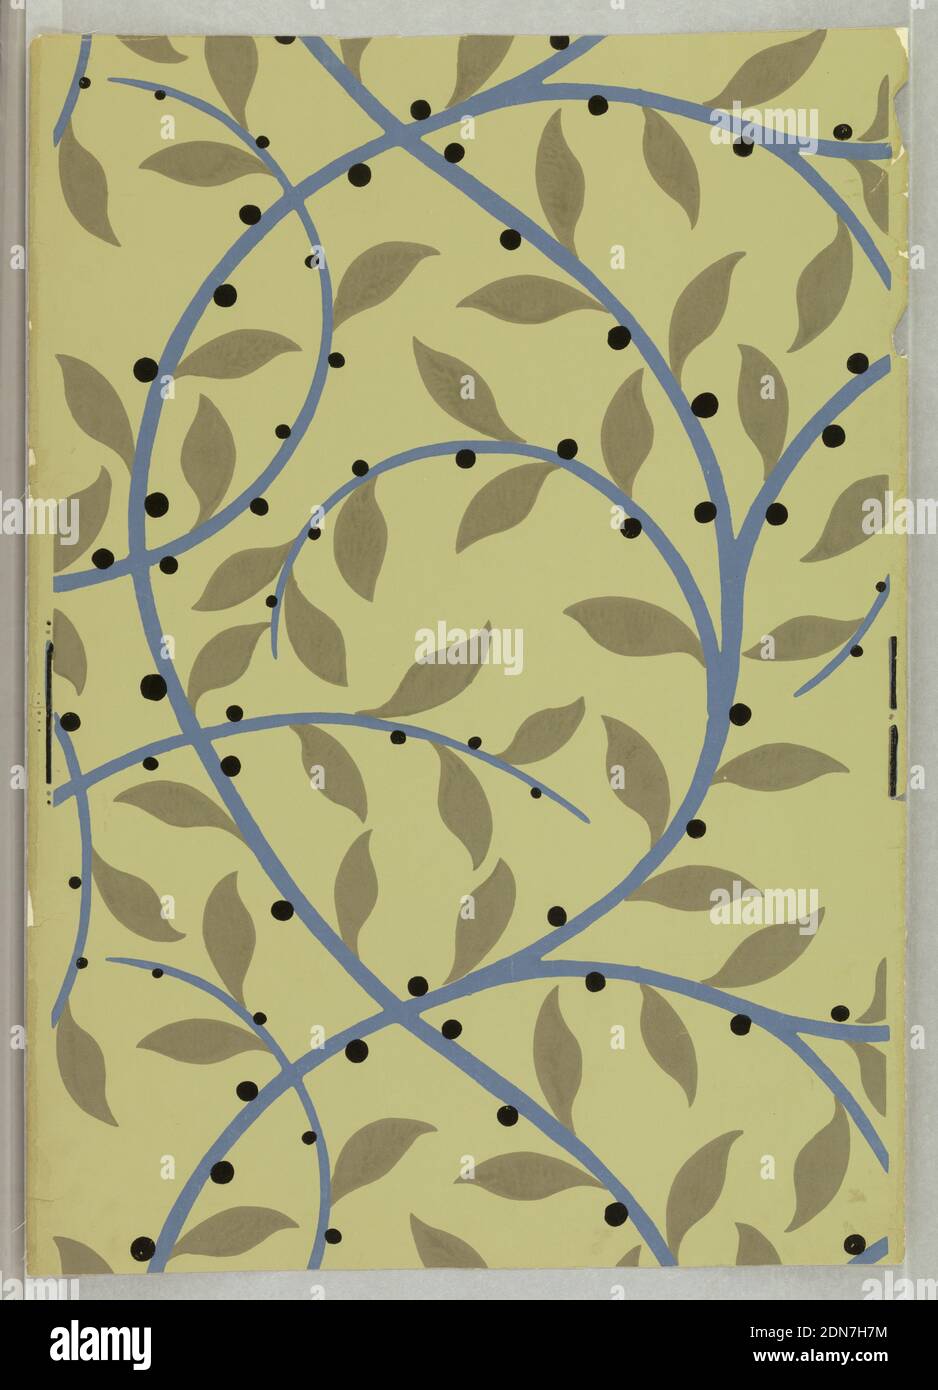 Sidewall, René Crevel, französisch, 1900–1935, Block gedruckt auf Papier, gedruckt für Nancy McClelland aus New York City. Eine stilisierte durchgehende Rebe in Blau mit flachen grau-grünen Blättern und schwarzen Beeren. Gleiche Ausführung wie 1945-3-8. Gedruckt in grün-grau, blau und schwarz auf salbeigrünem Feld., Frankreich, 1920, Wallcoverings, Sidewall Stockfoto